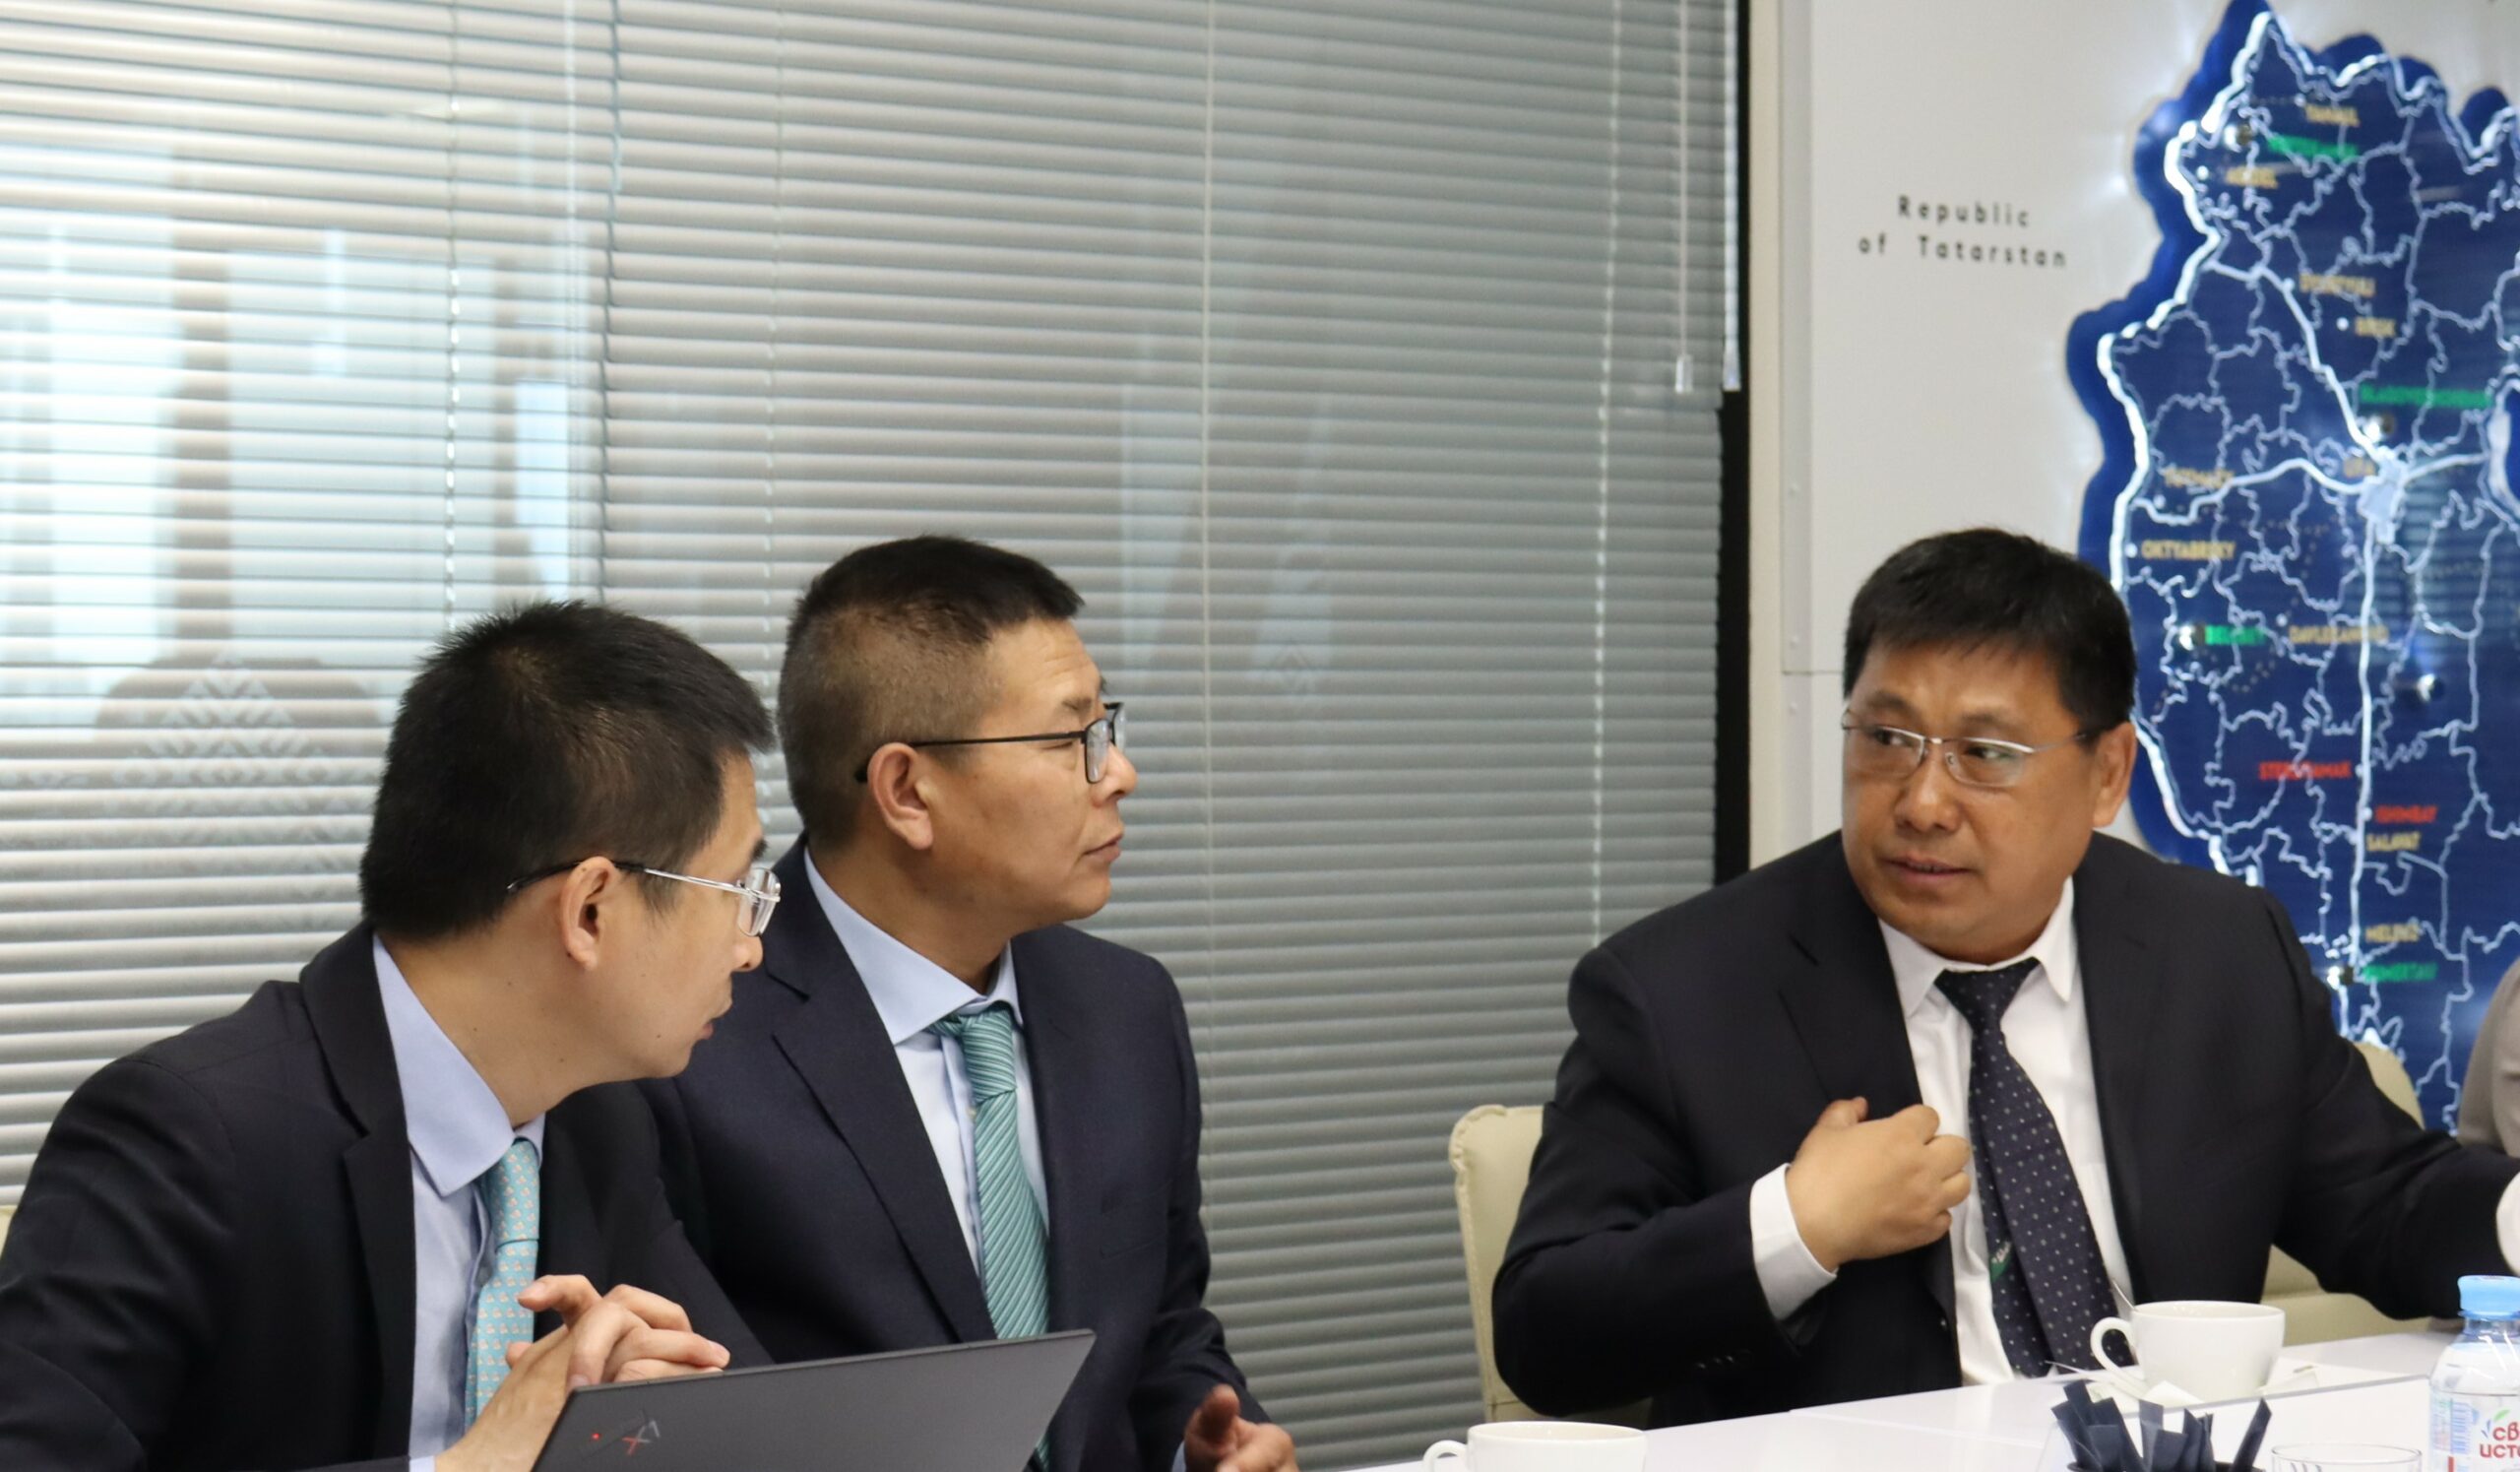 Китайский инвестор планирует разместить производство медицинской продукции в Башкортостане